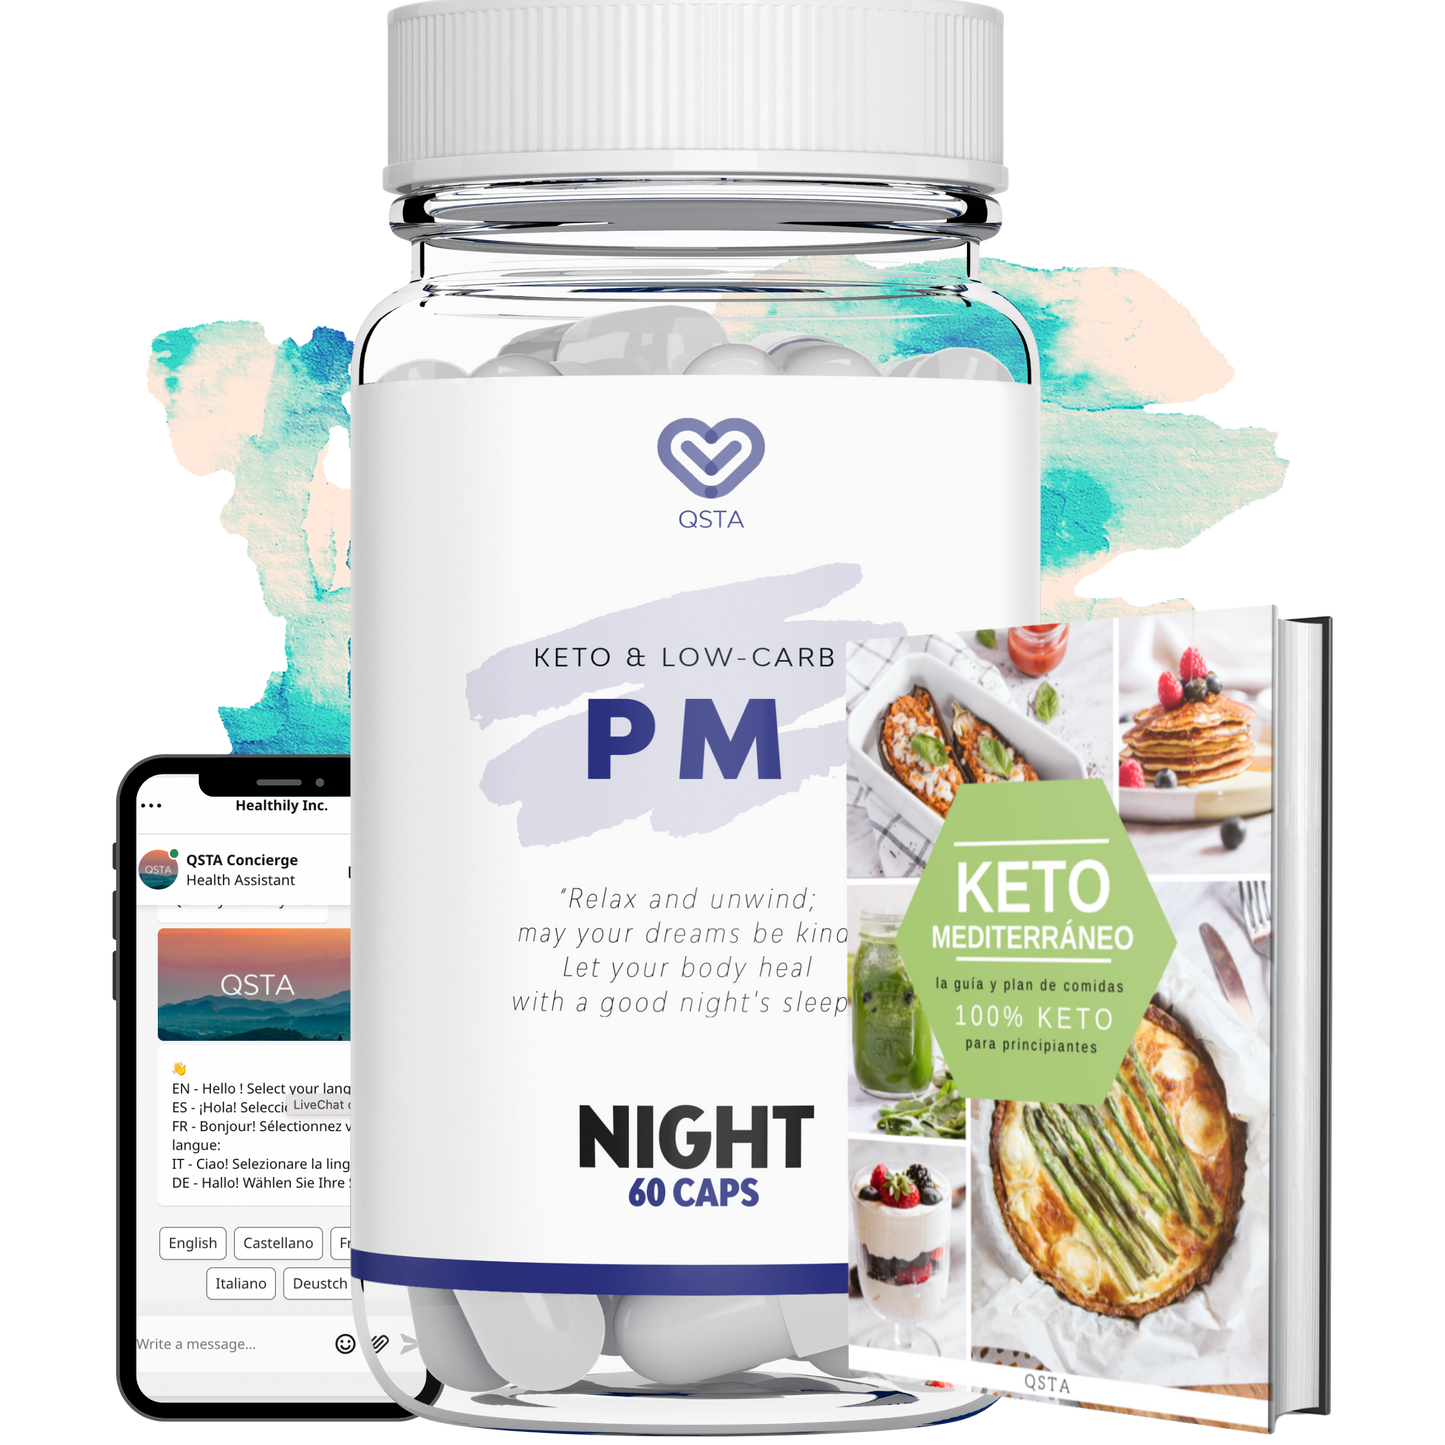 Keto PM | Cetosis y sueño REM durante la noche